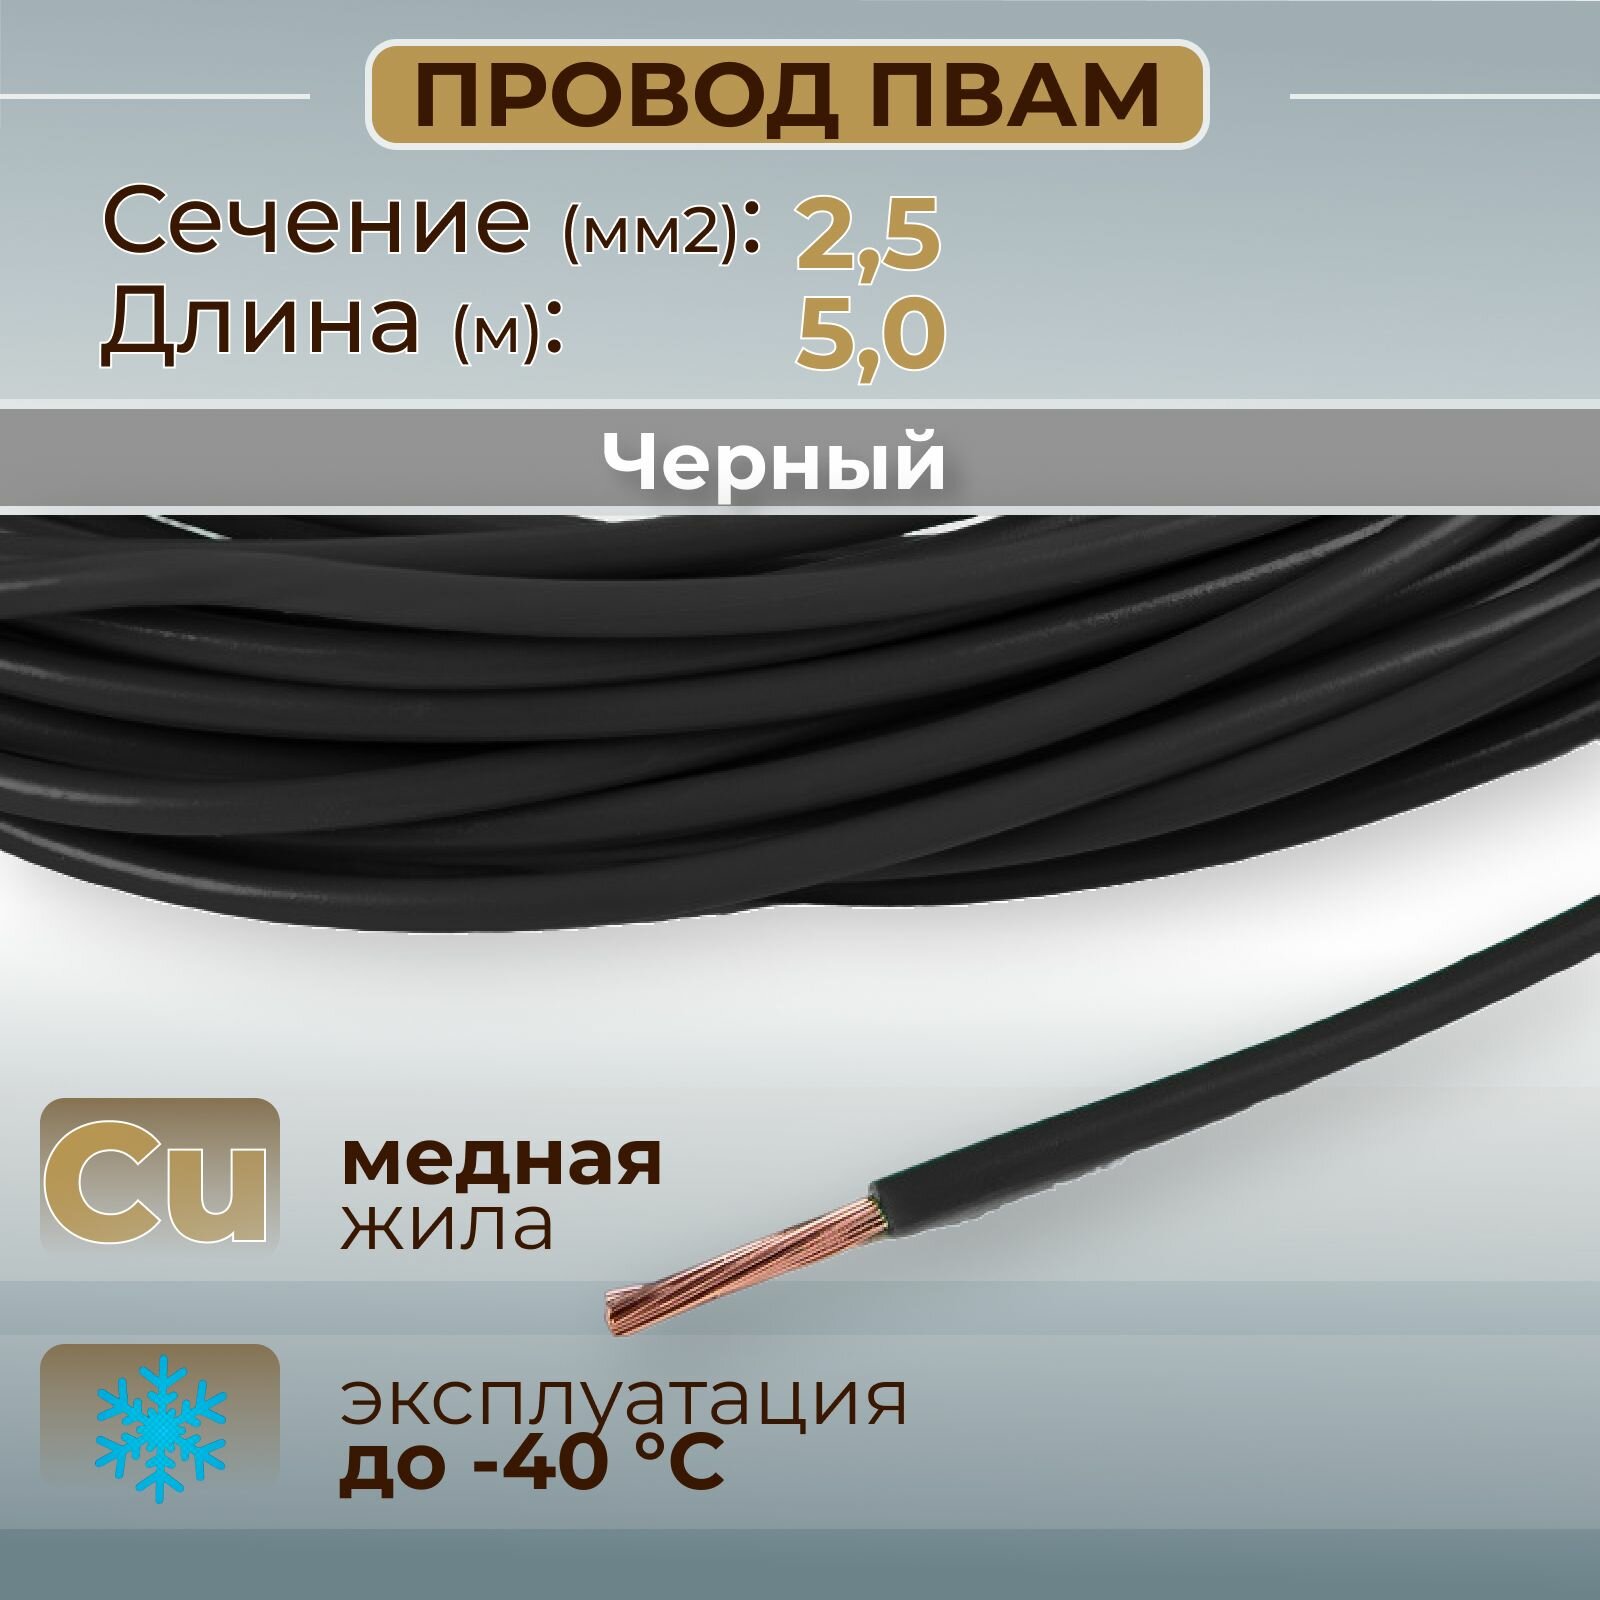 Провода автомобильные пвам цвет черный с сечением жилы 2,5 кв. мм, длина 5м